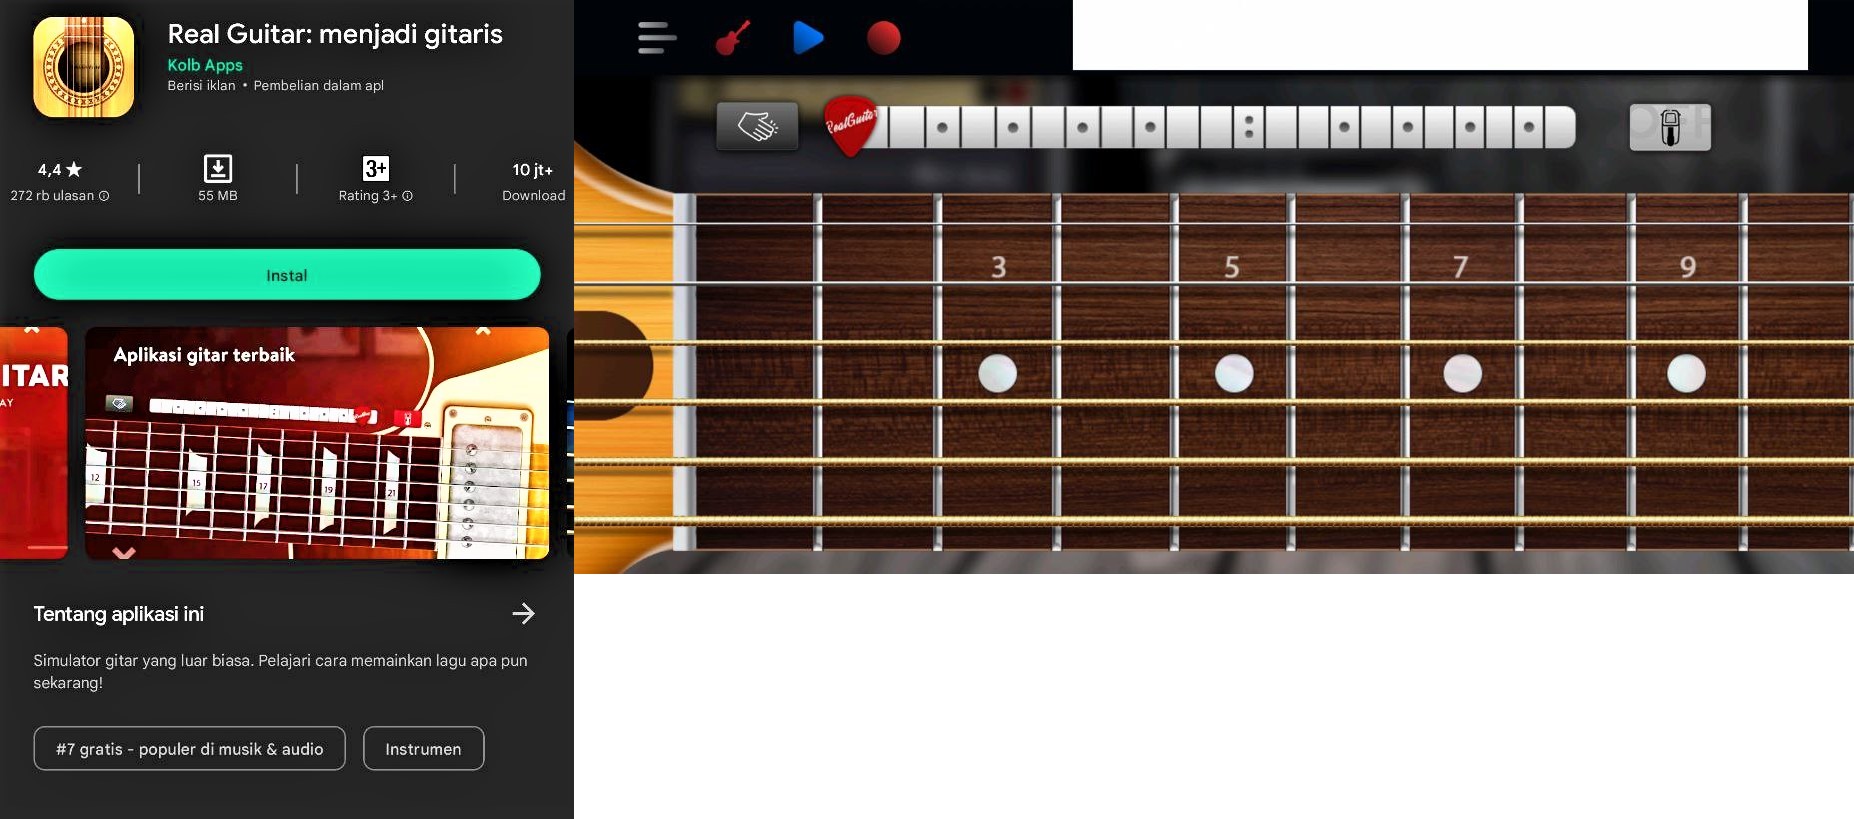 Aplikasi belajar gitar terbaik untuk Pemula - Real Guitar 